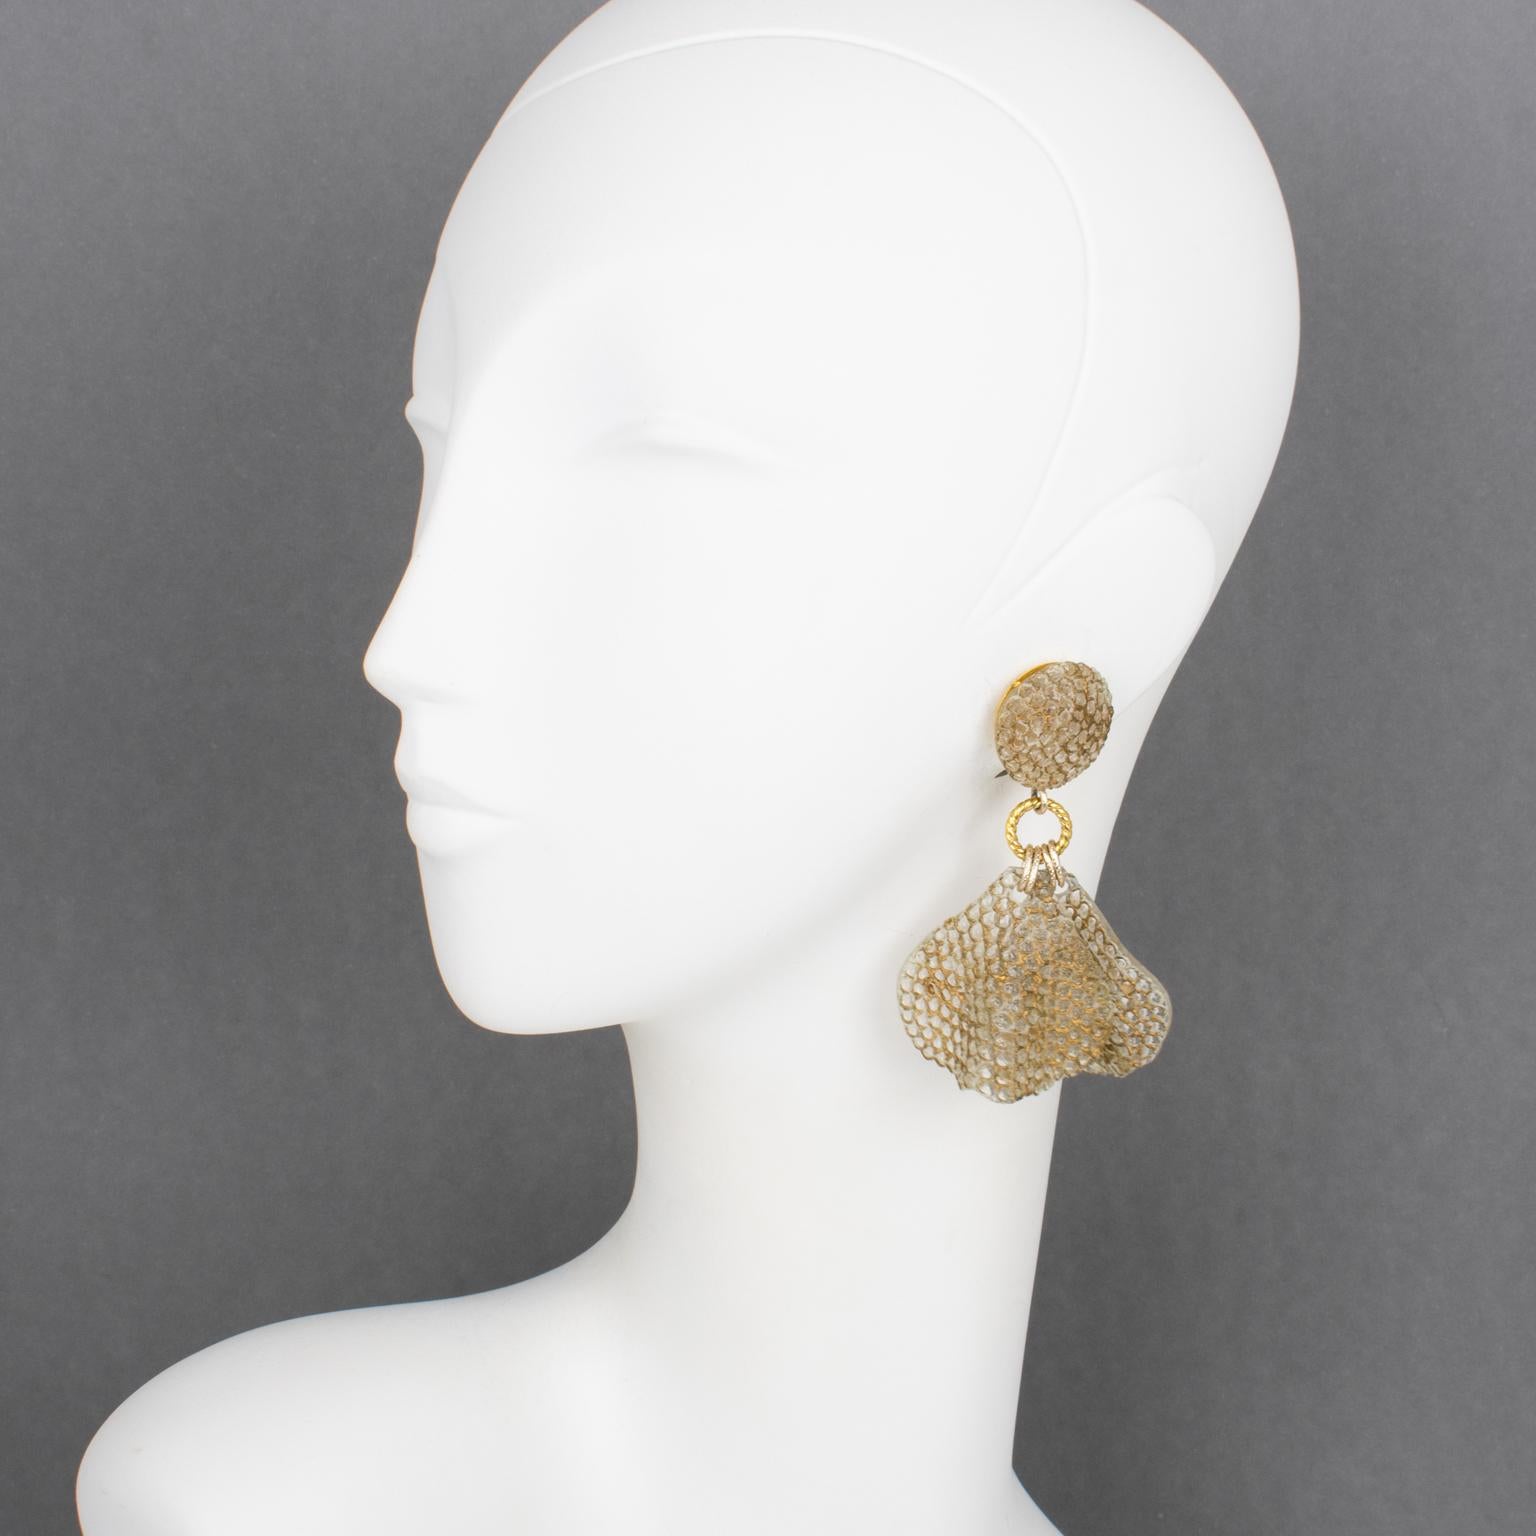 Diese wunderschönen Francoise Montague Paris Ohrringe, entworfen von Cilea Paris, zeichnen sich durch eine übergroße, baumelnde Form aus durchscheinendem Harz aus, die mit gewellten und wabenförmigen Blütenblättern mit Goldapplikationen verziert